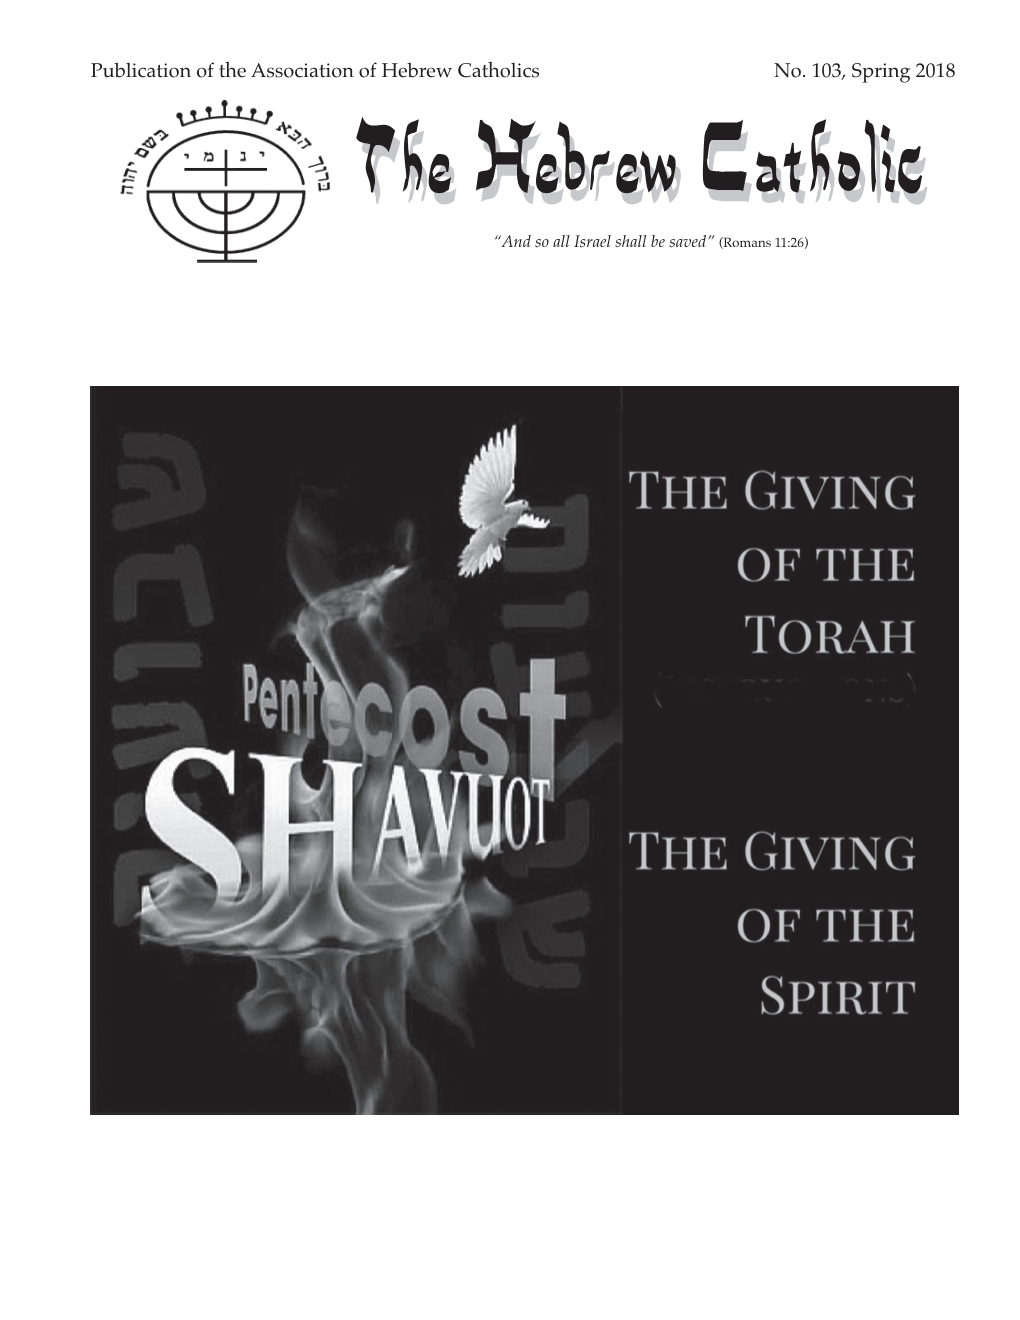 Publication of the Association of Hebrew Catholics No. 103, Spring